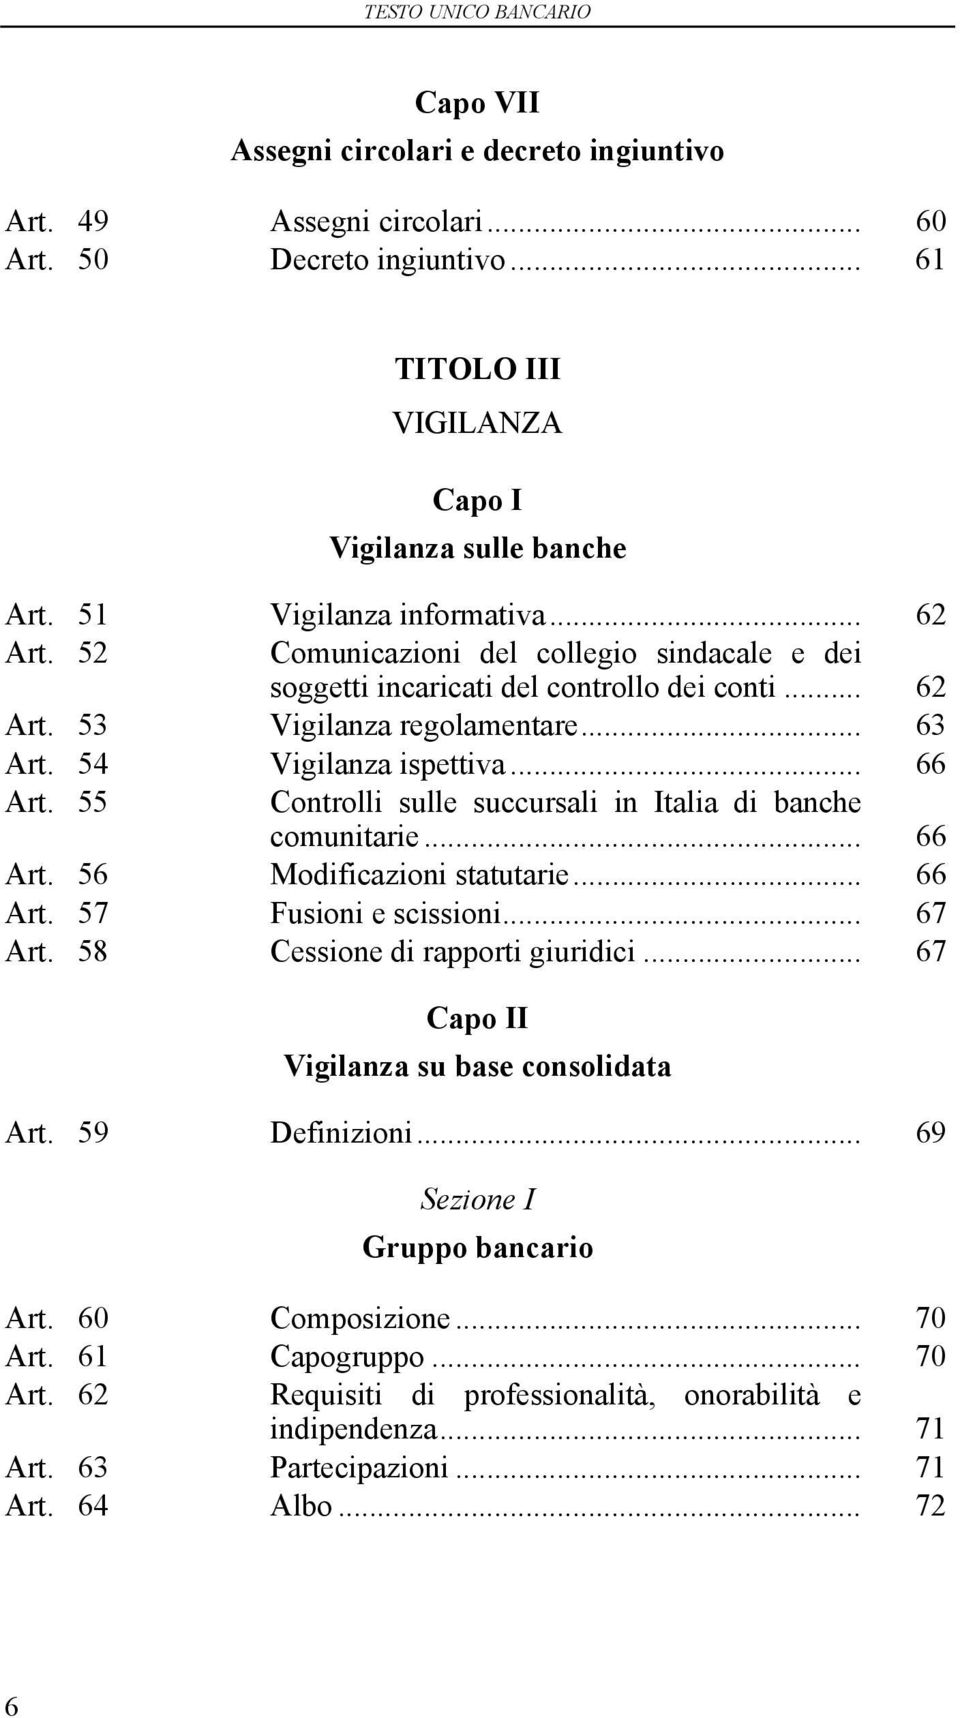 55 Controlli sulle succursali in Italia di banche comunitarie... 66 Art. 56 Modificazioni statutarie... 66 Art. 57 Fusioni e scissioni... 67 Art. 58 Cessione di rapporti giuridici.